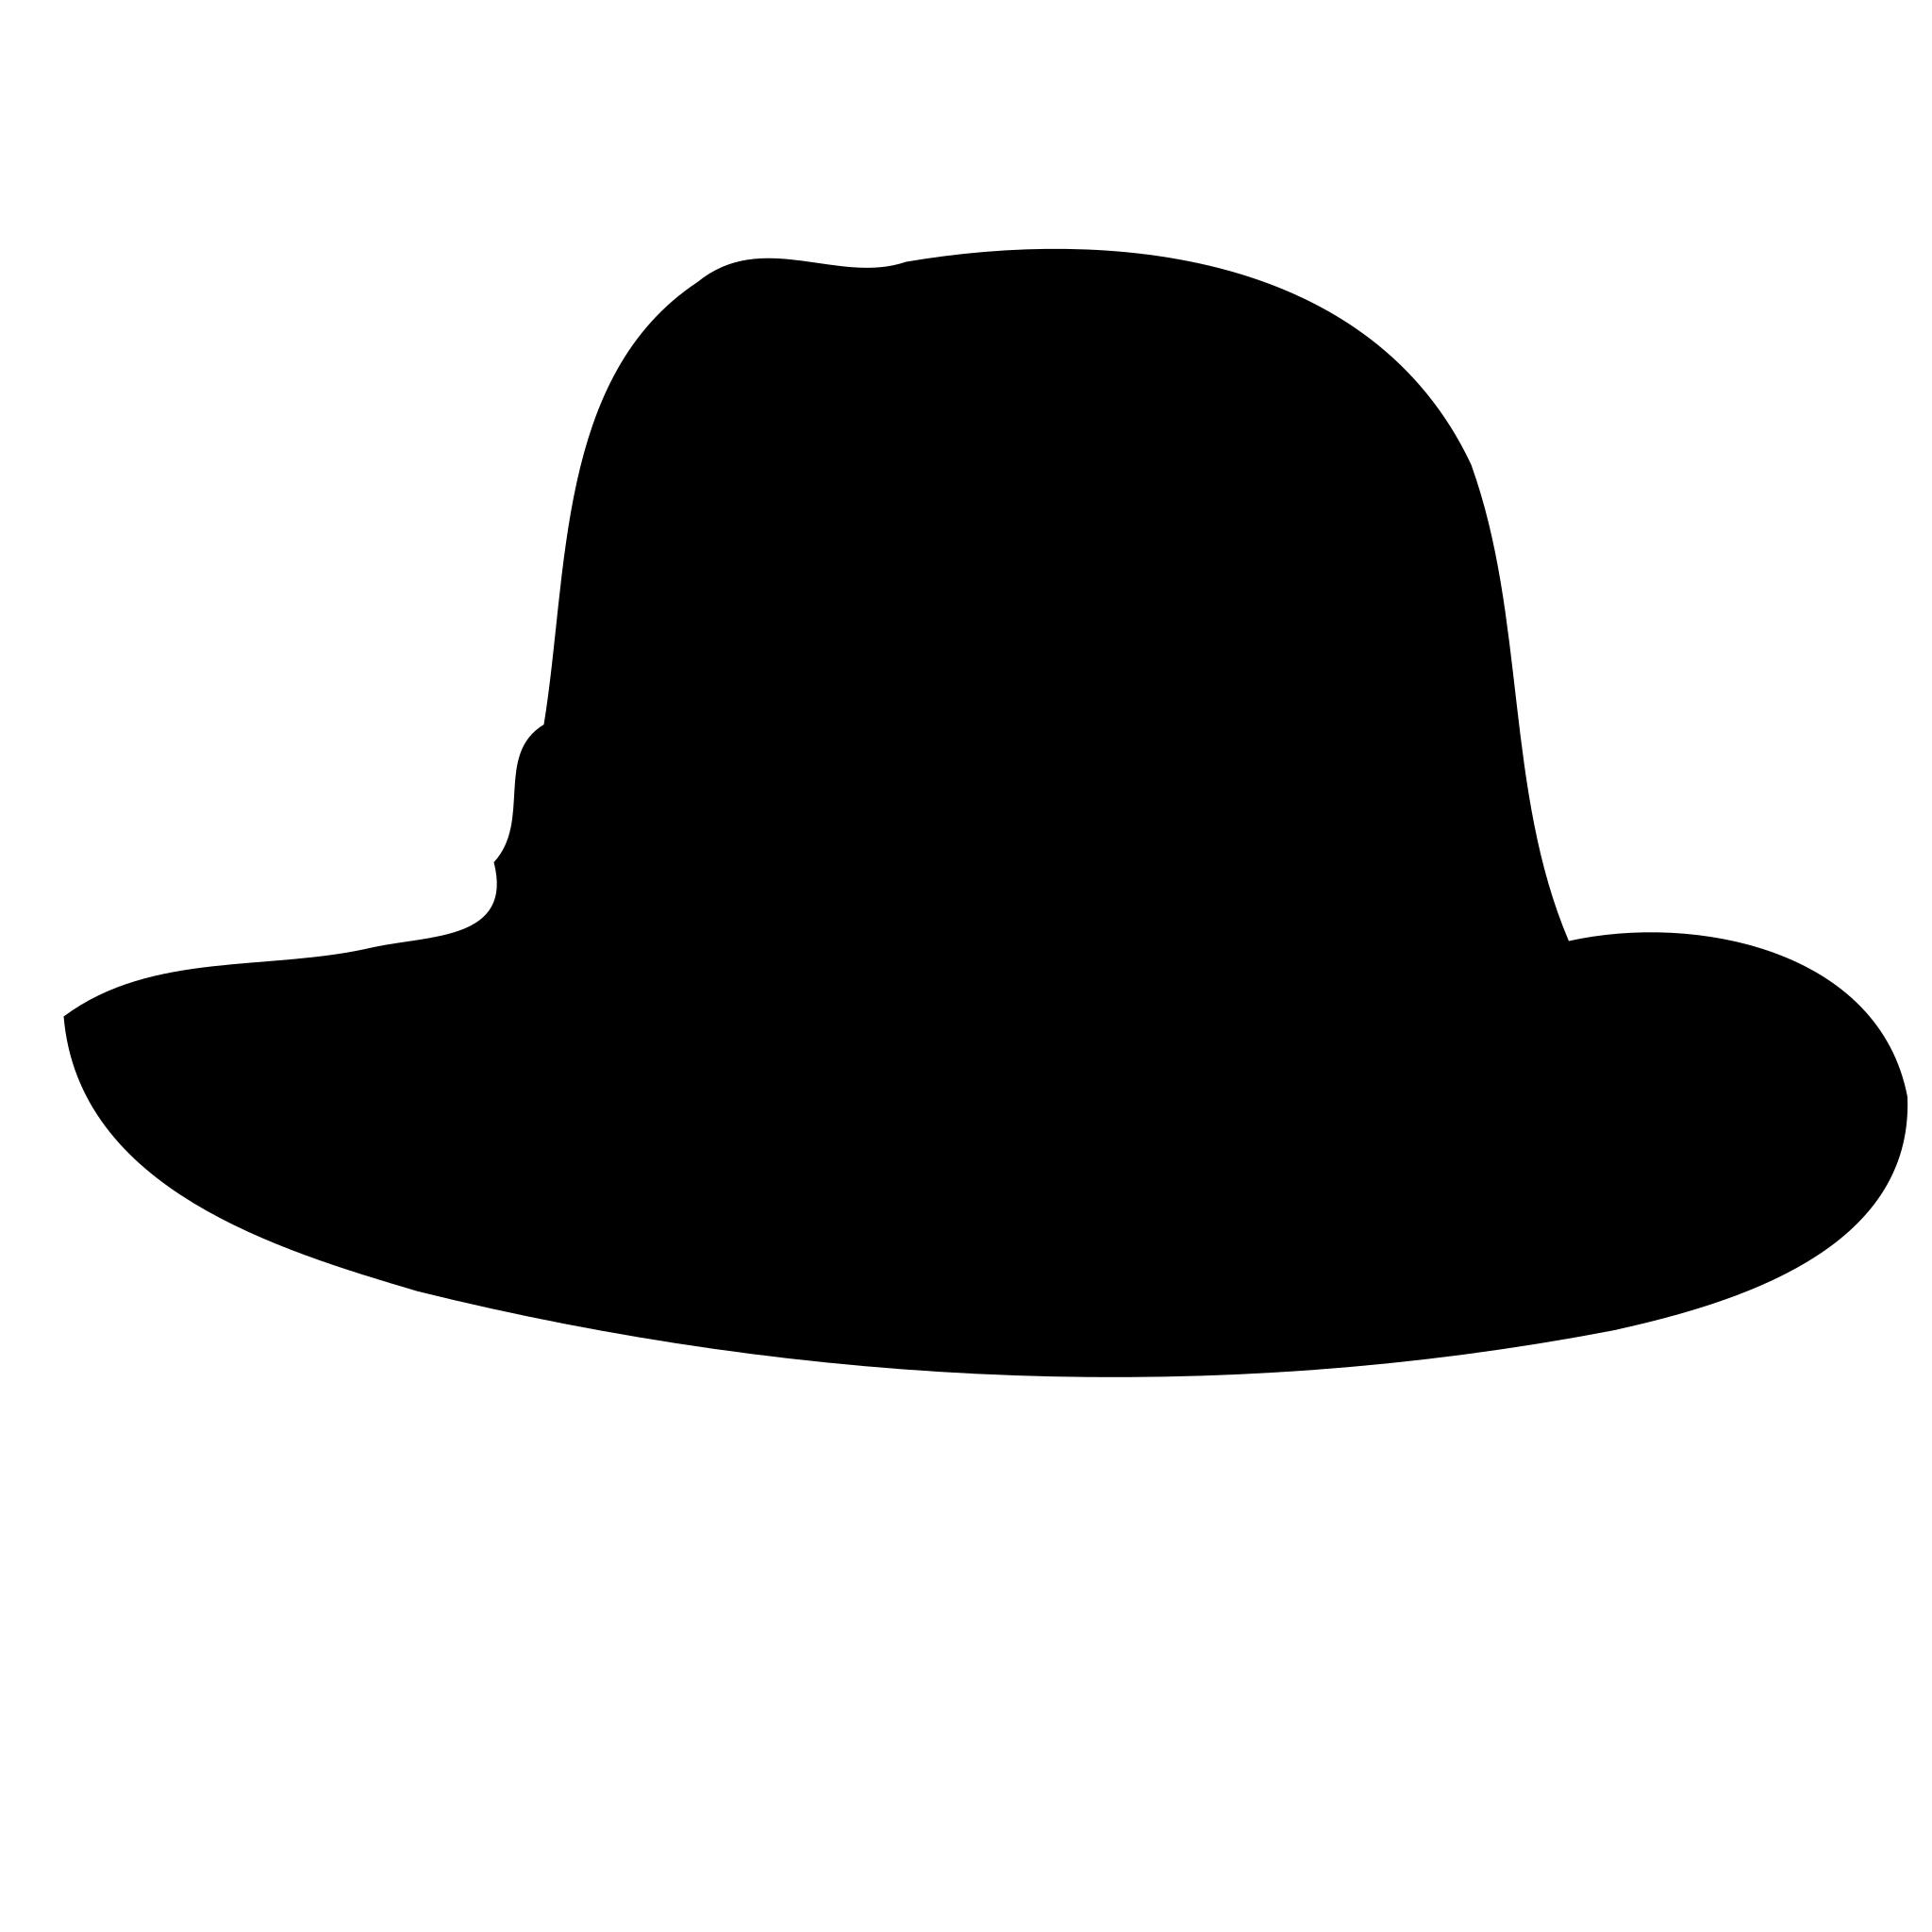 Шляпа тень. Шляпа. Шляпа силуэт. Шляпка силуэт. Шляпа черная.